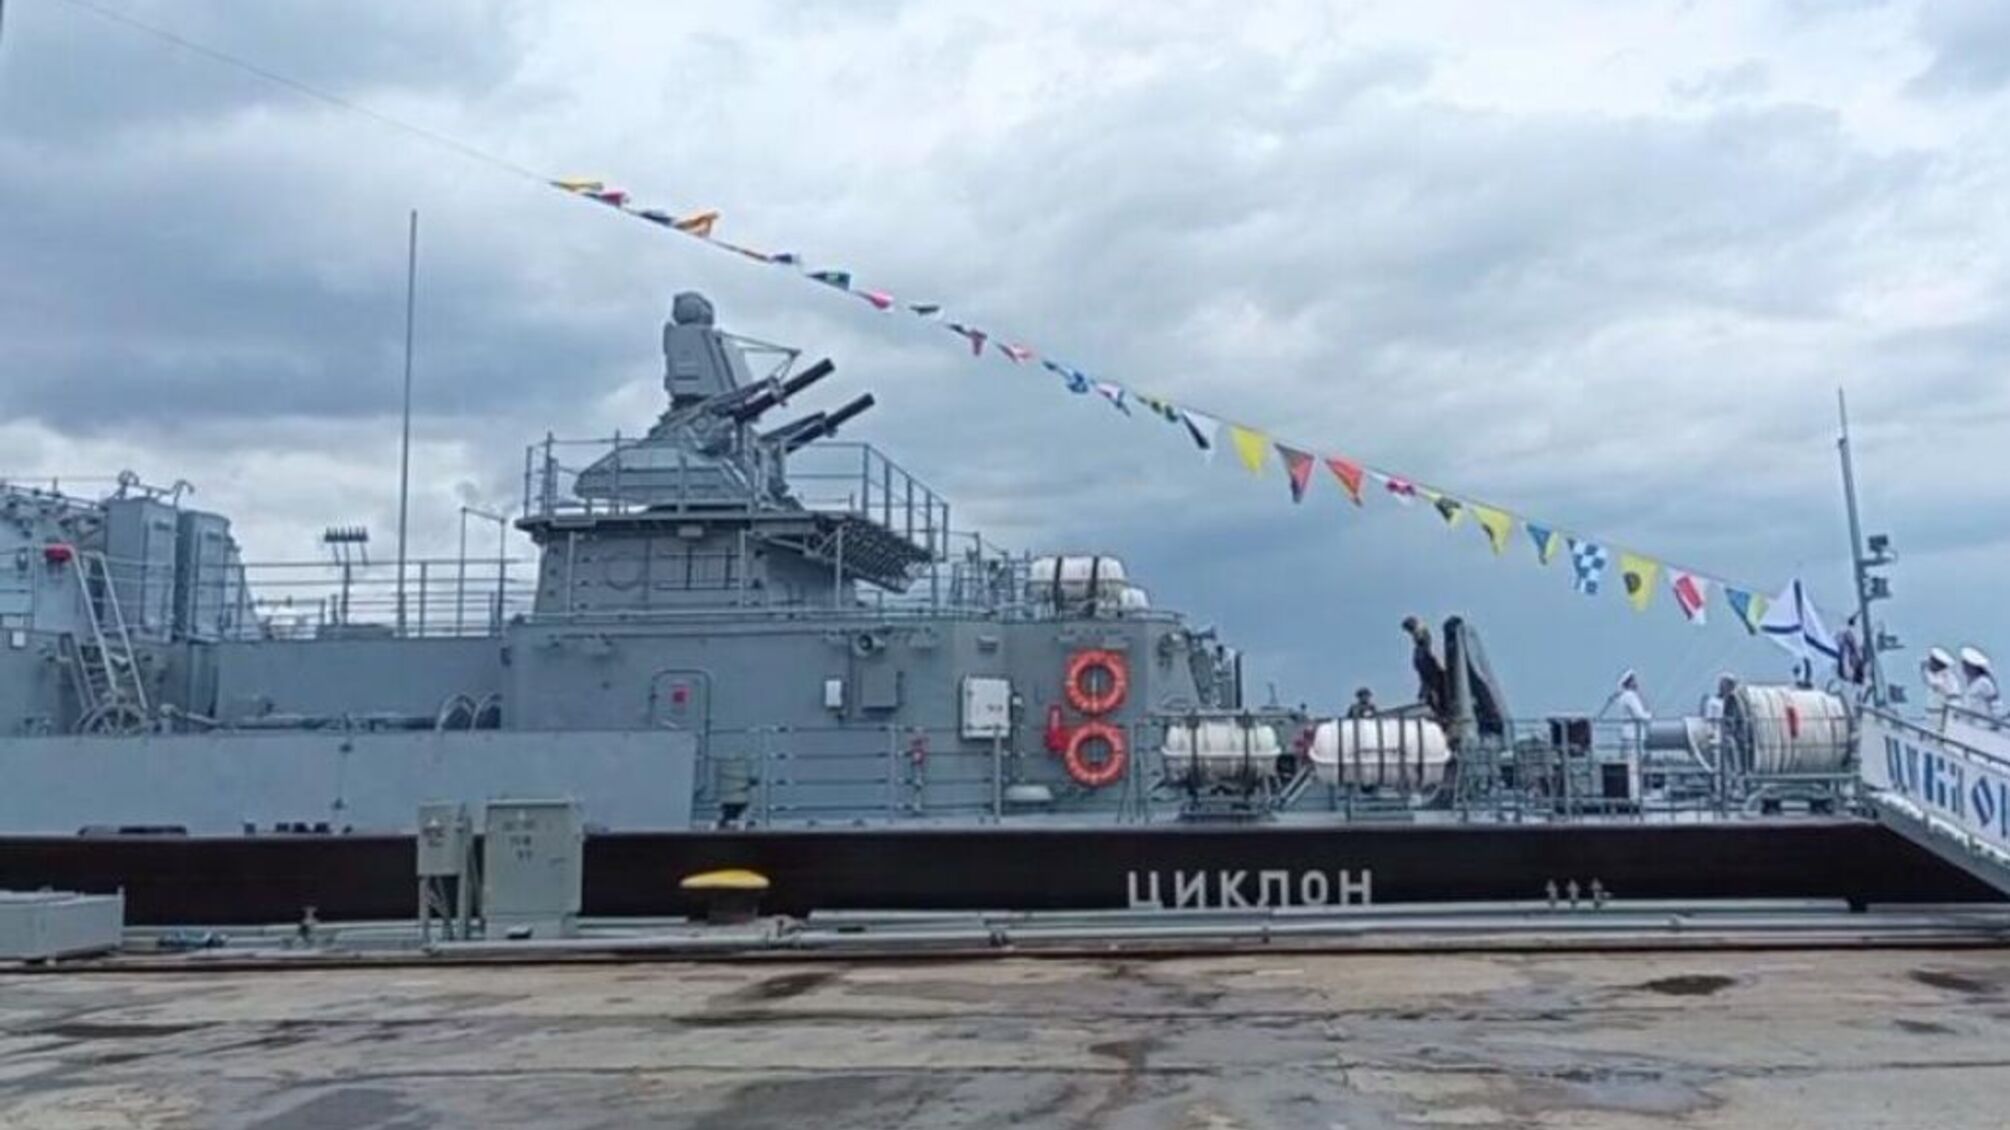 Замена утопленной 'Москве': в Керчи рф презентовала ракетный корабль 'Циклон'